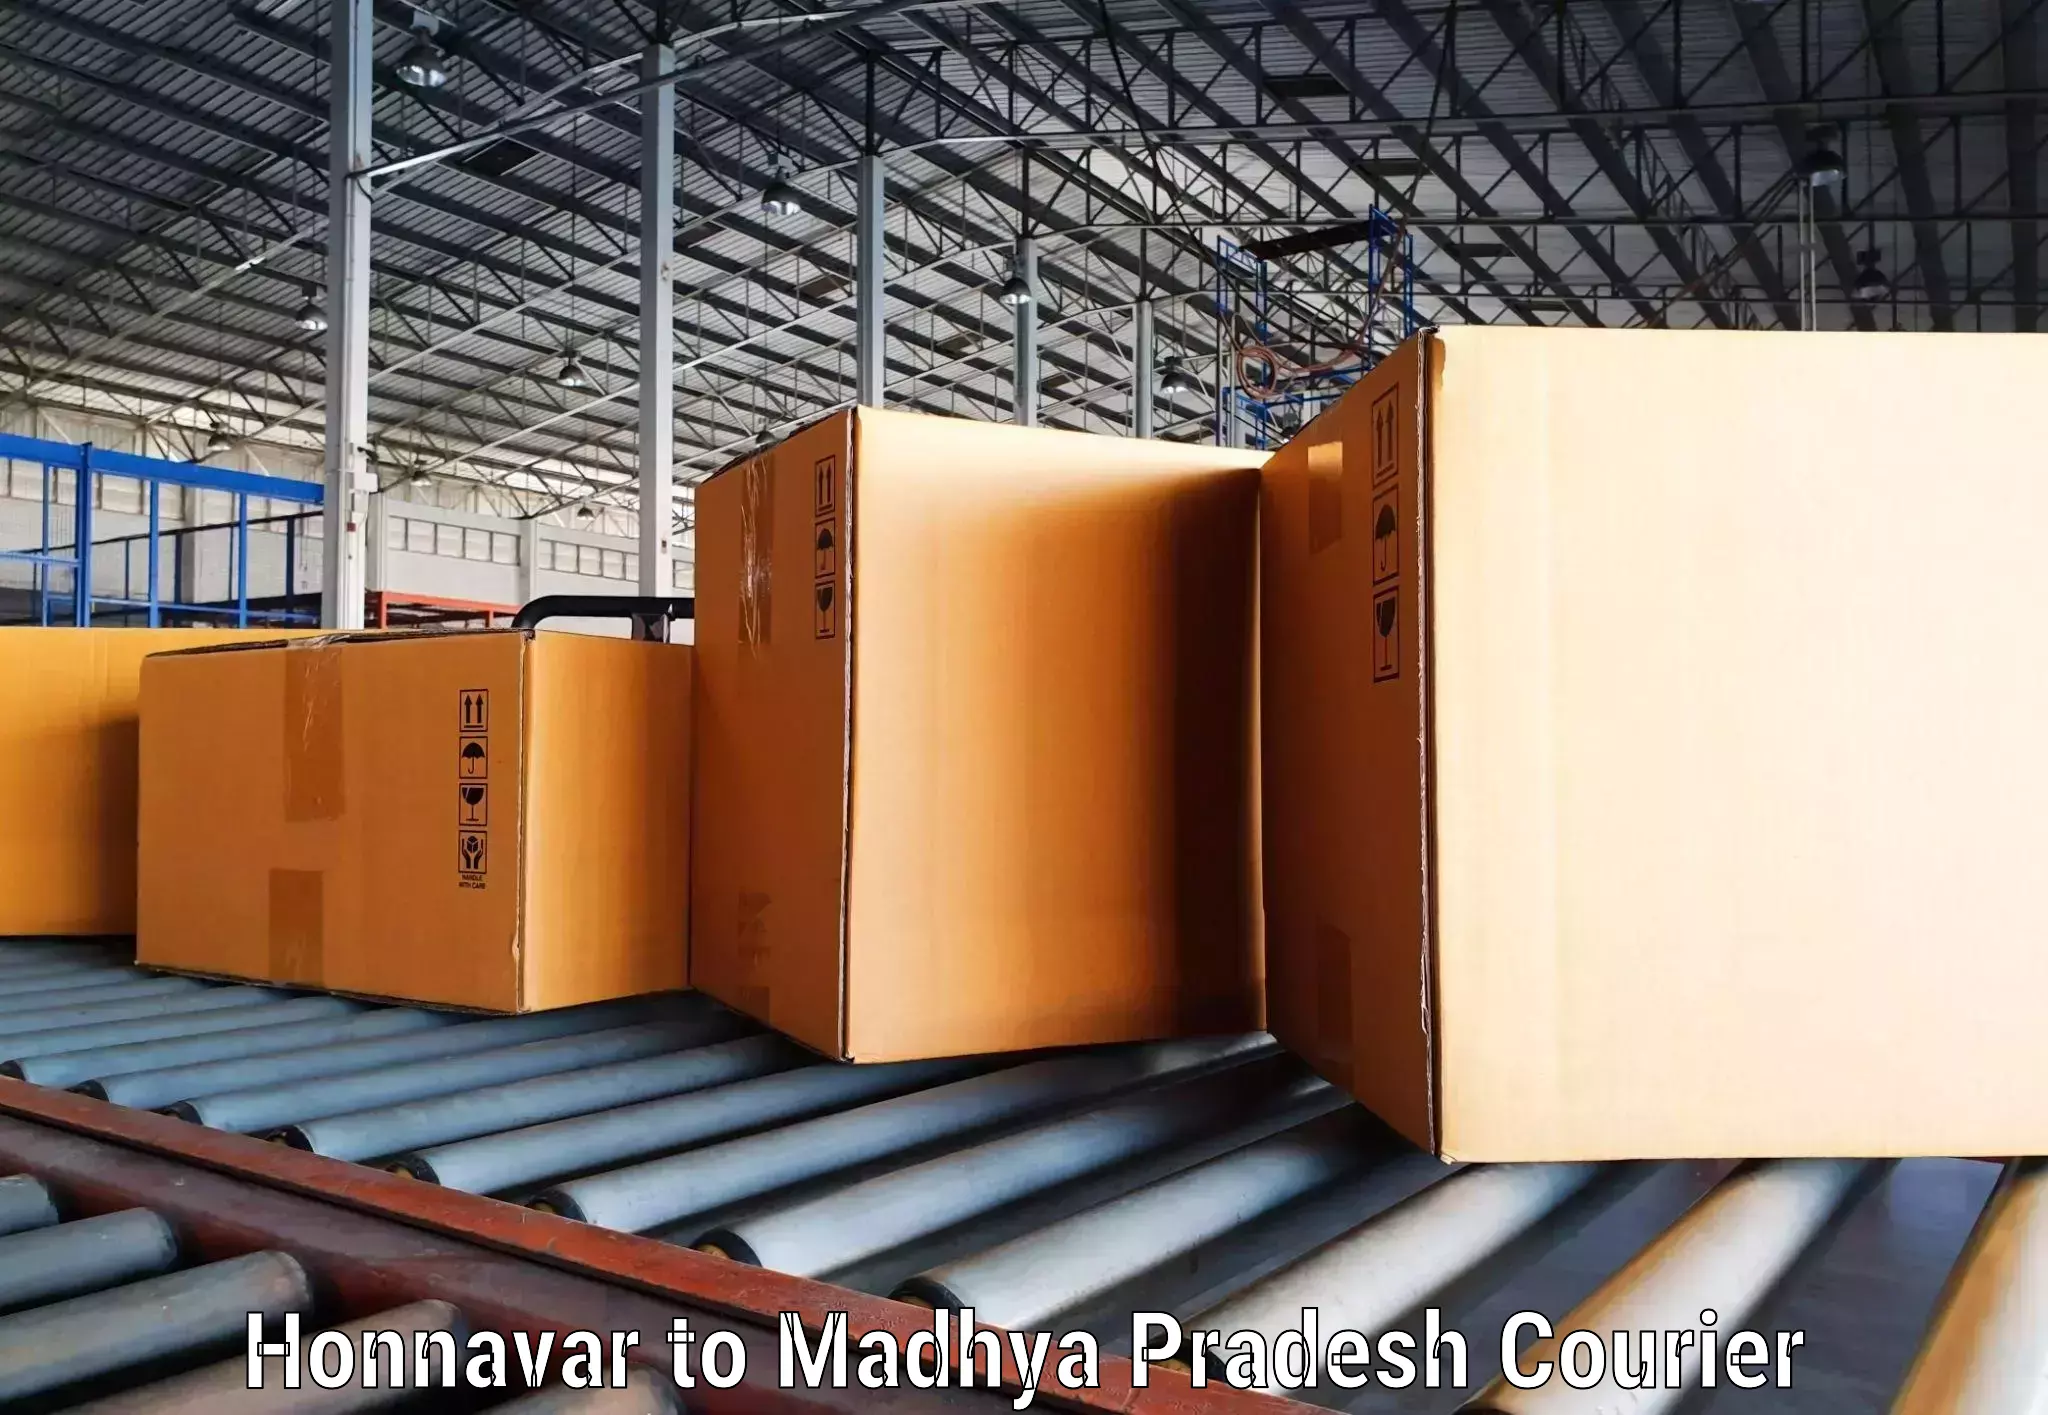 Package delivery network Honnavar to Vijayraghavgarh